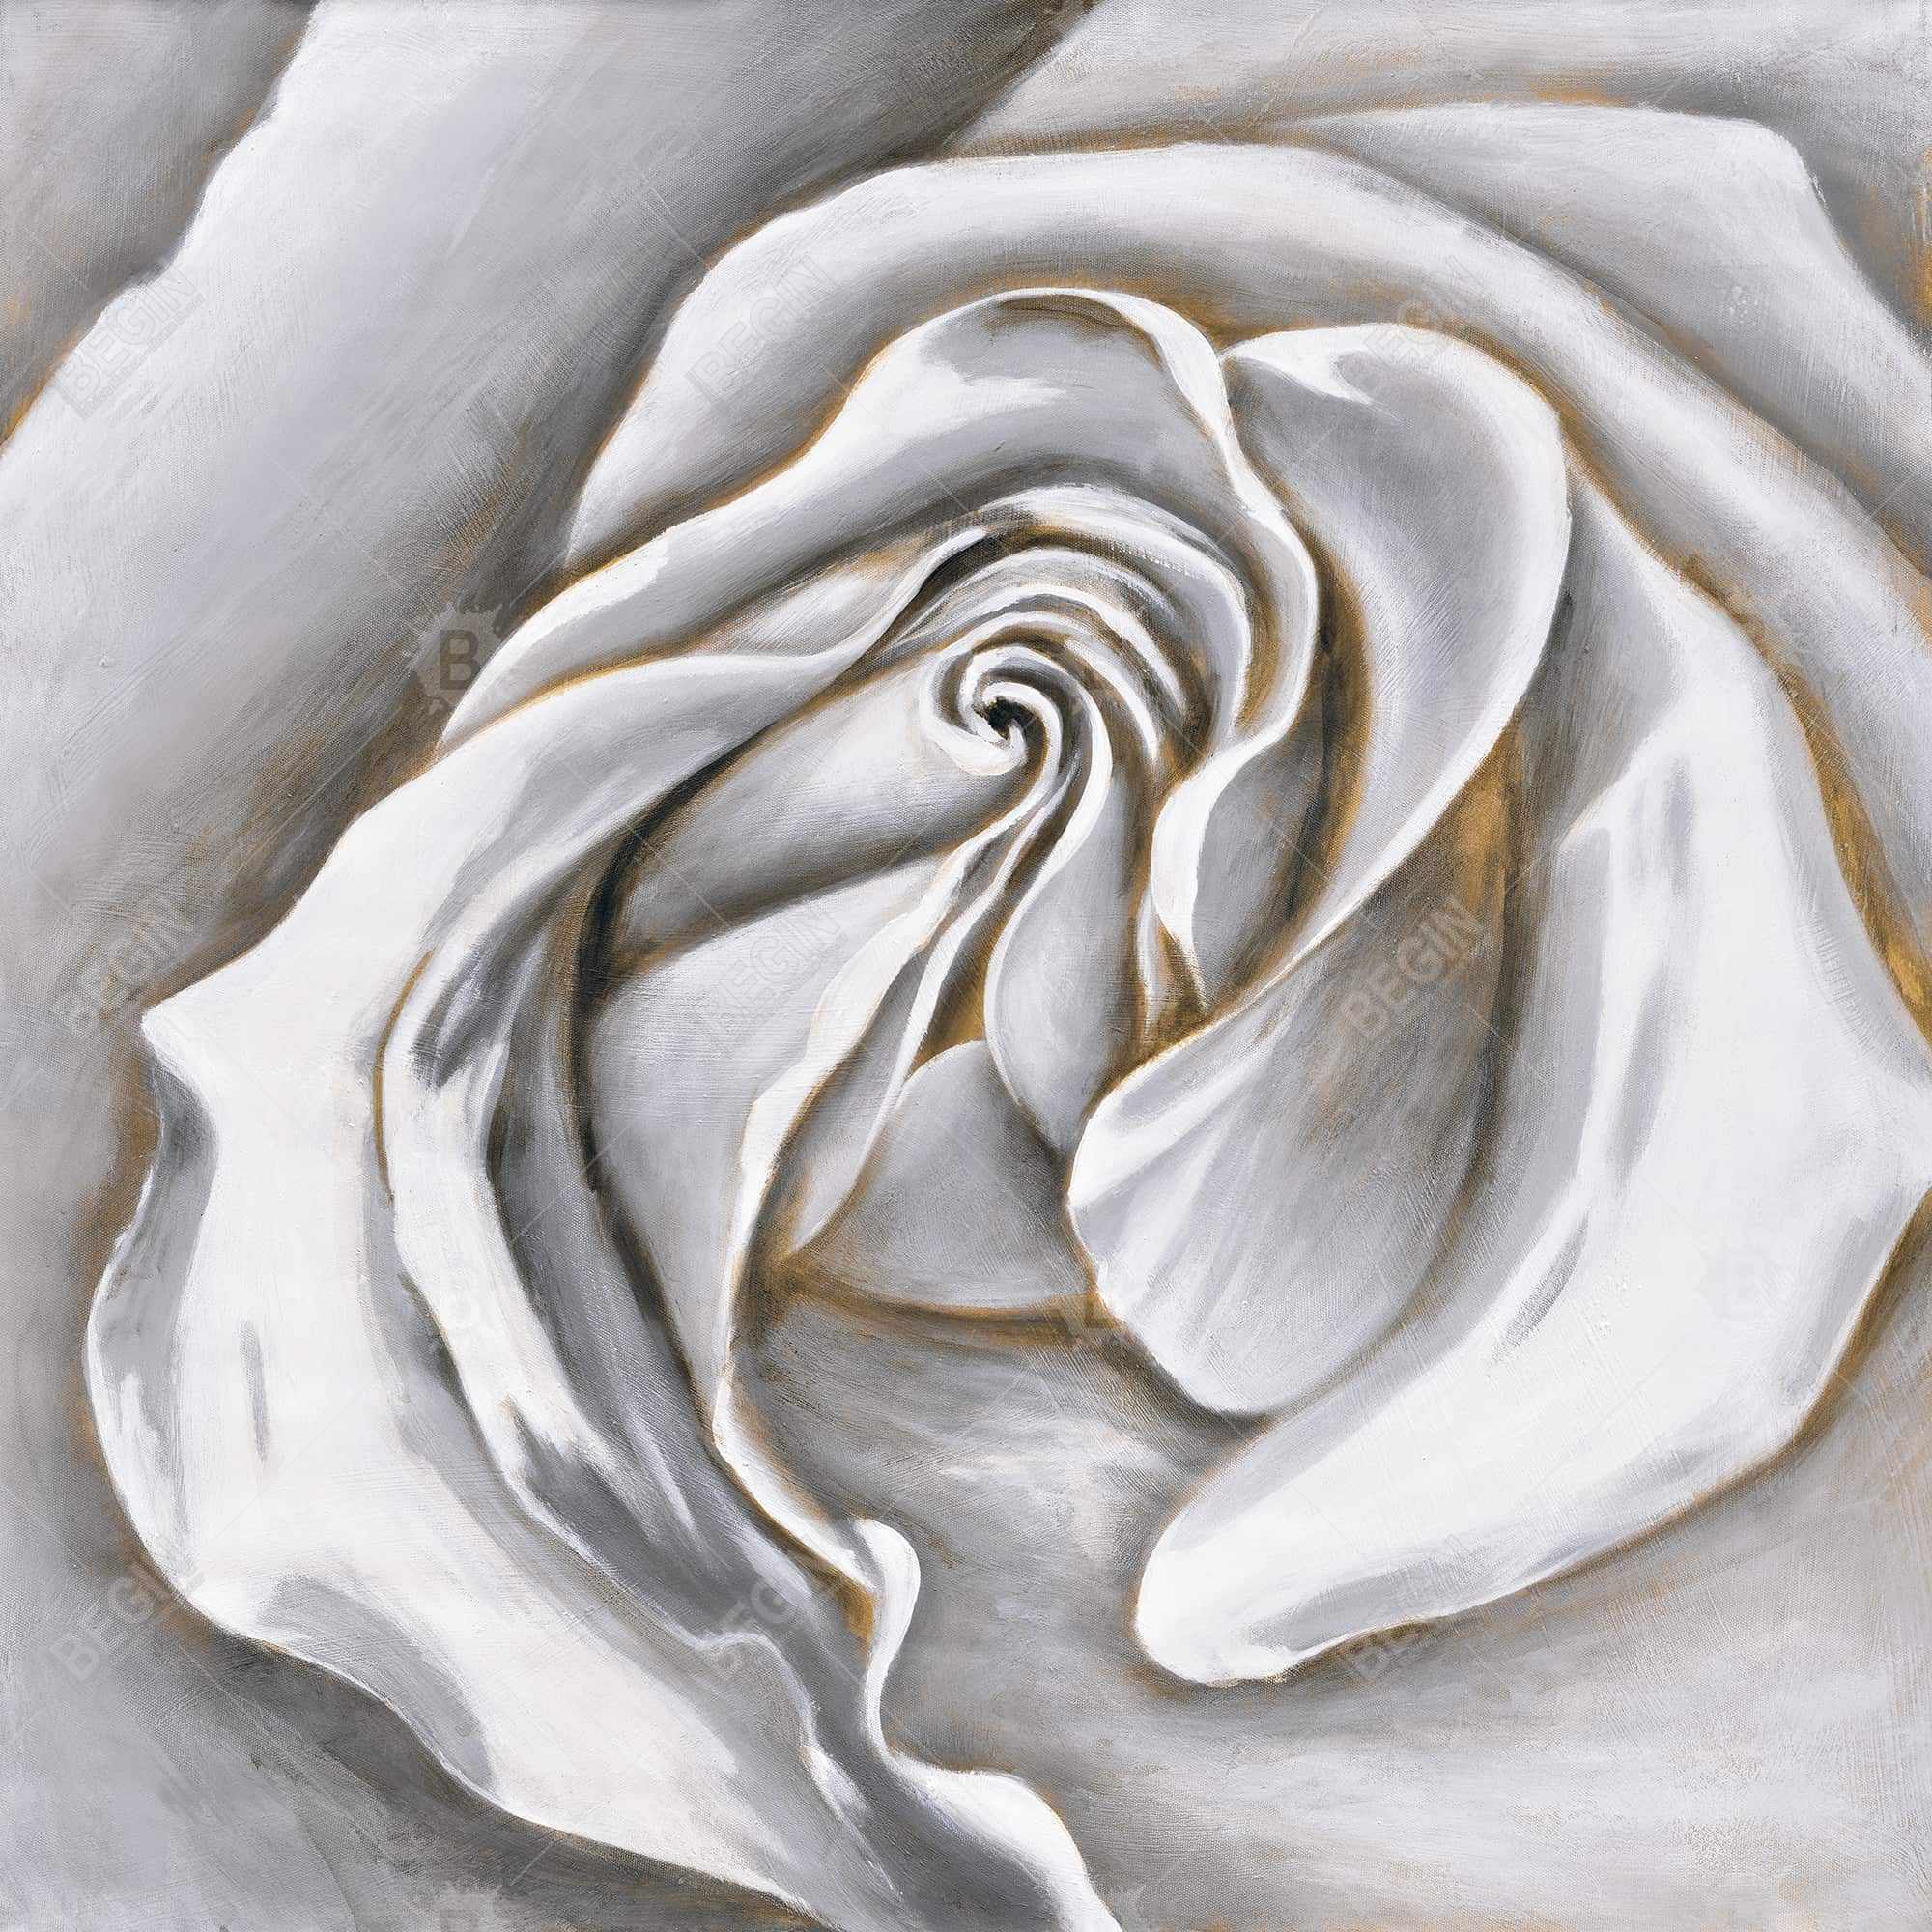 White rose delicate